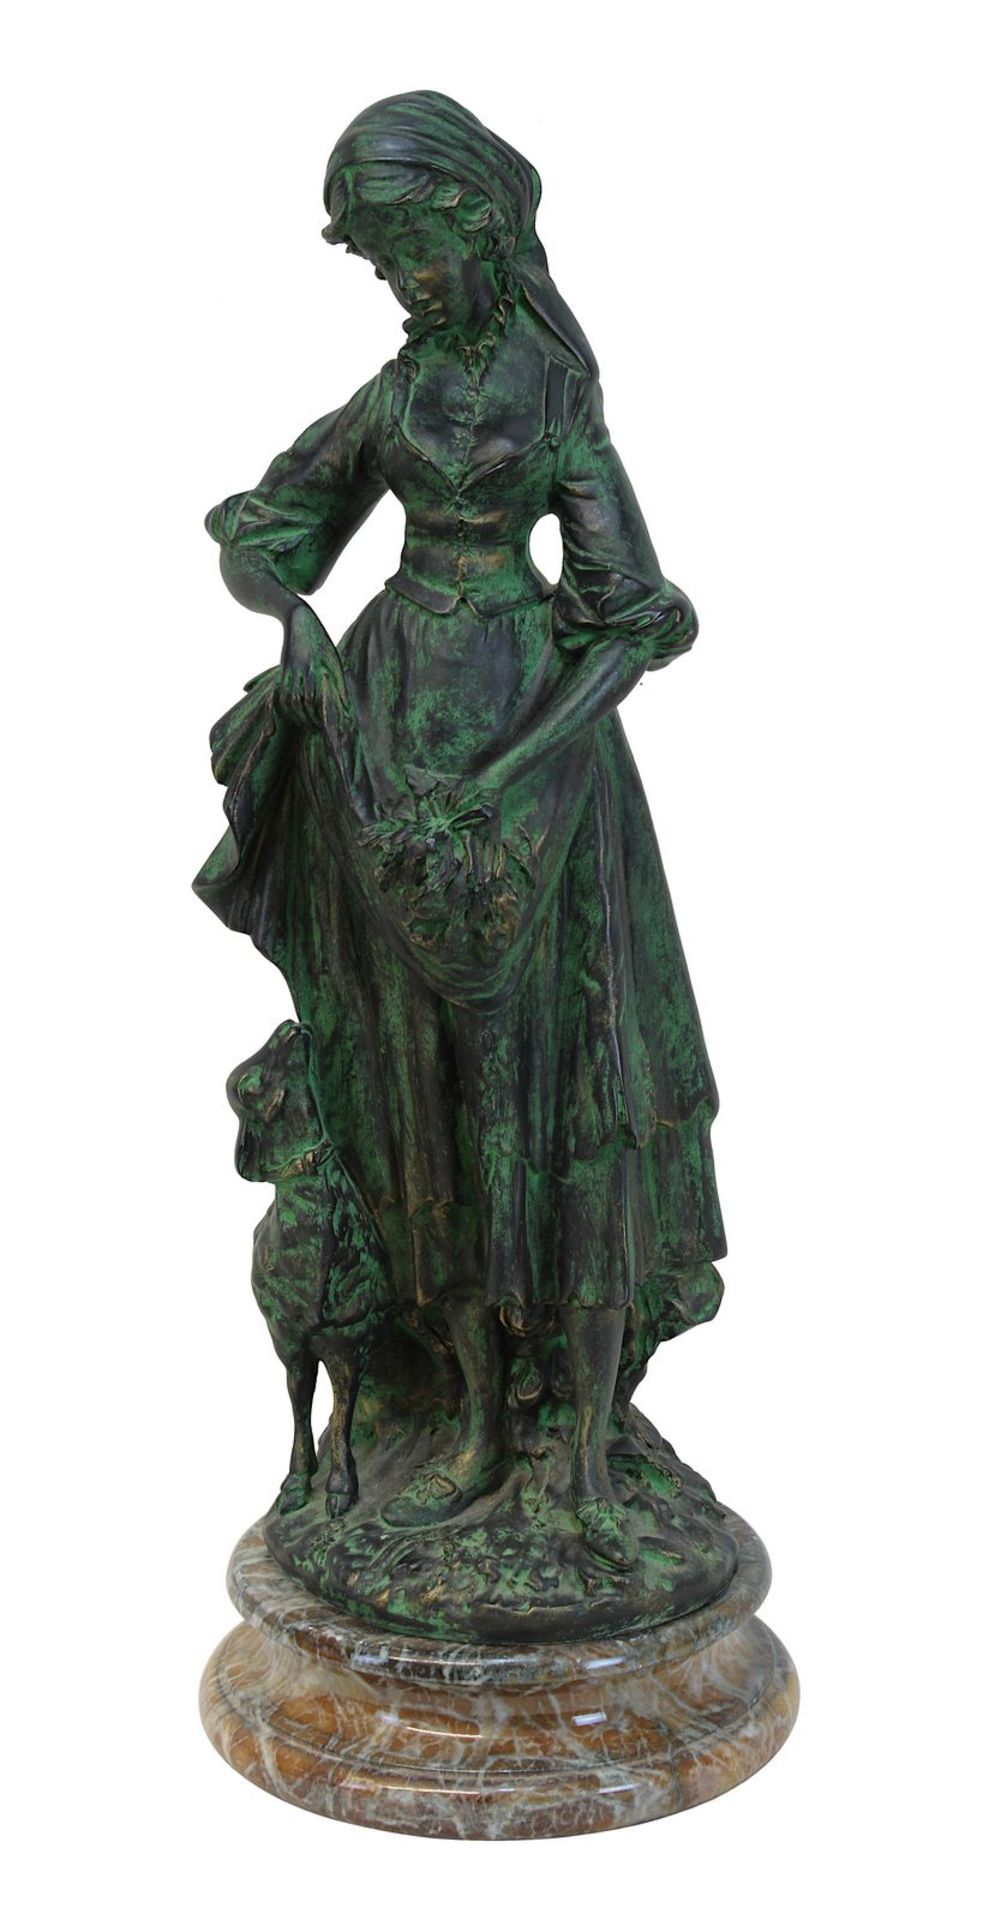 Gussfigur einer Schäferin, 2. H. 20. Jh., Guss mit grüner Patina, auf Natursockel stehende Dame